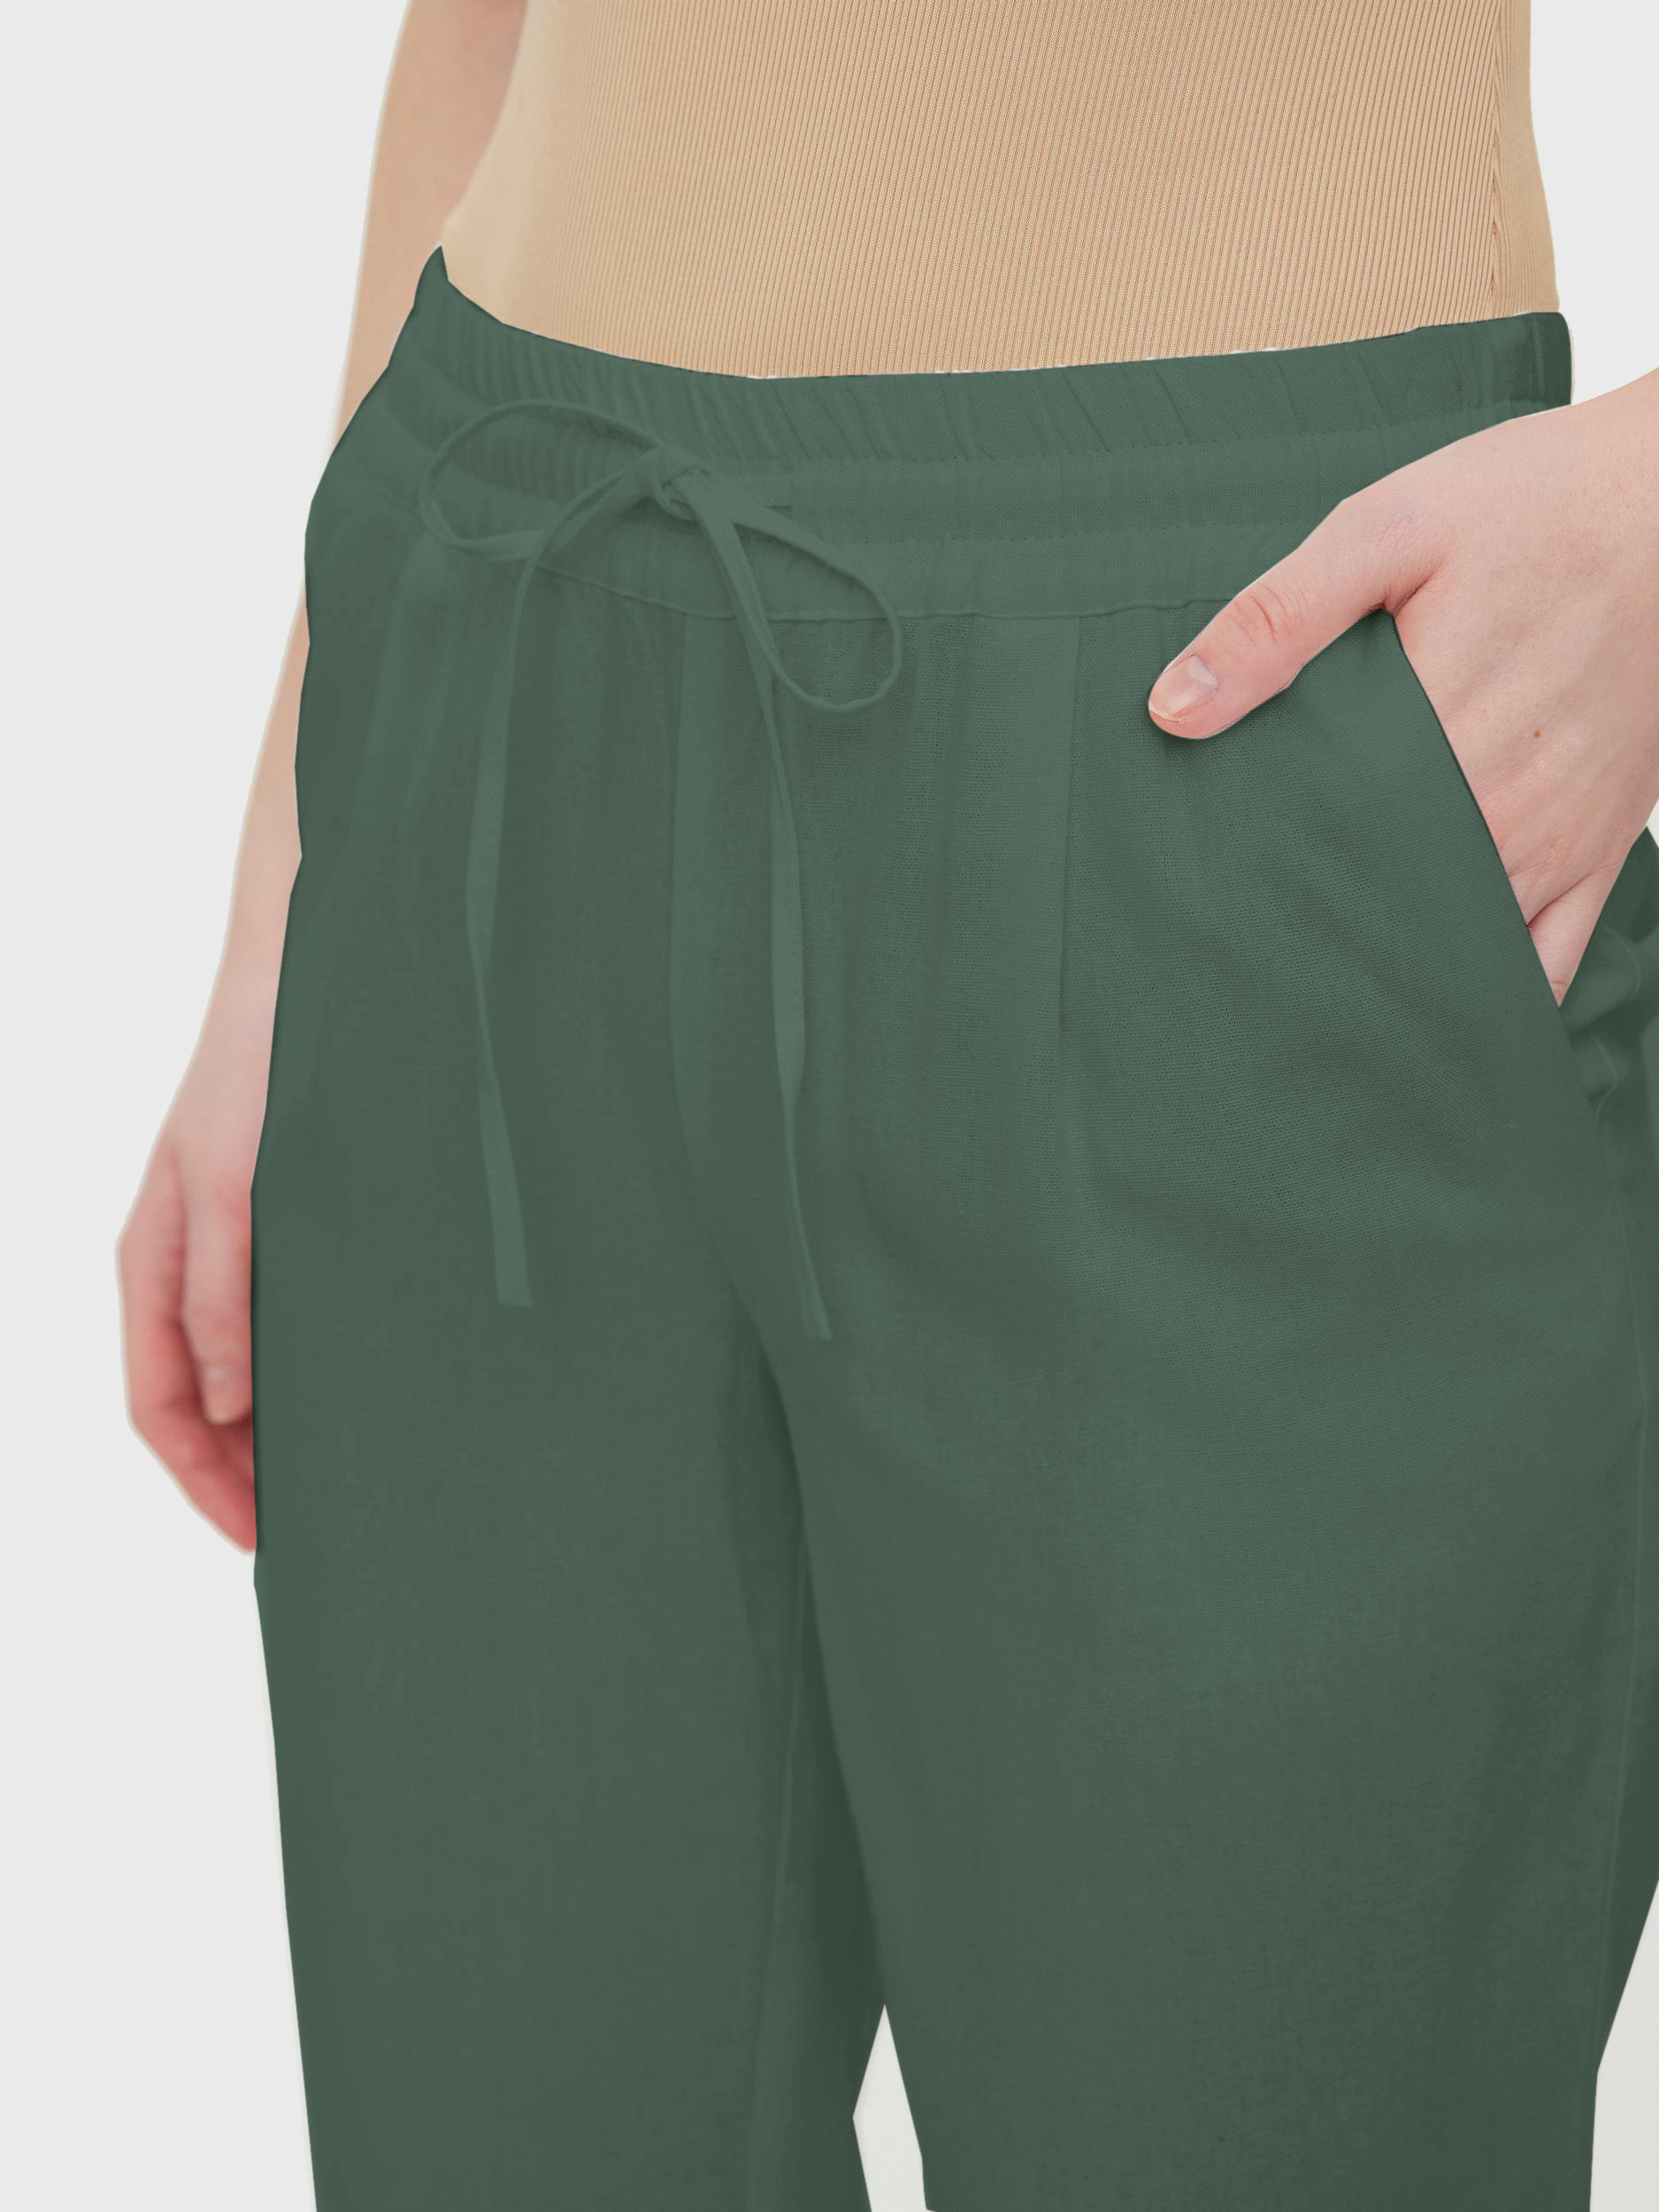 VENTE FINALE - Pantalon en lin de longueur cheville Milo, LAURIER, large